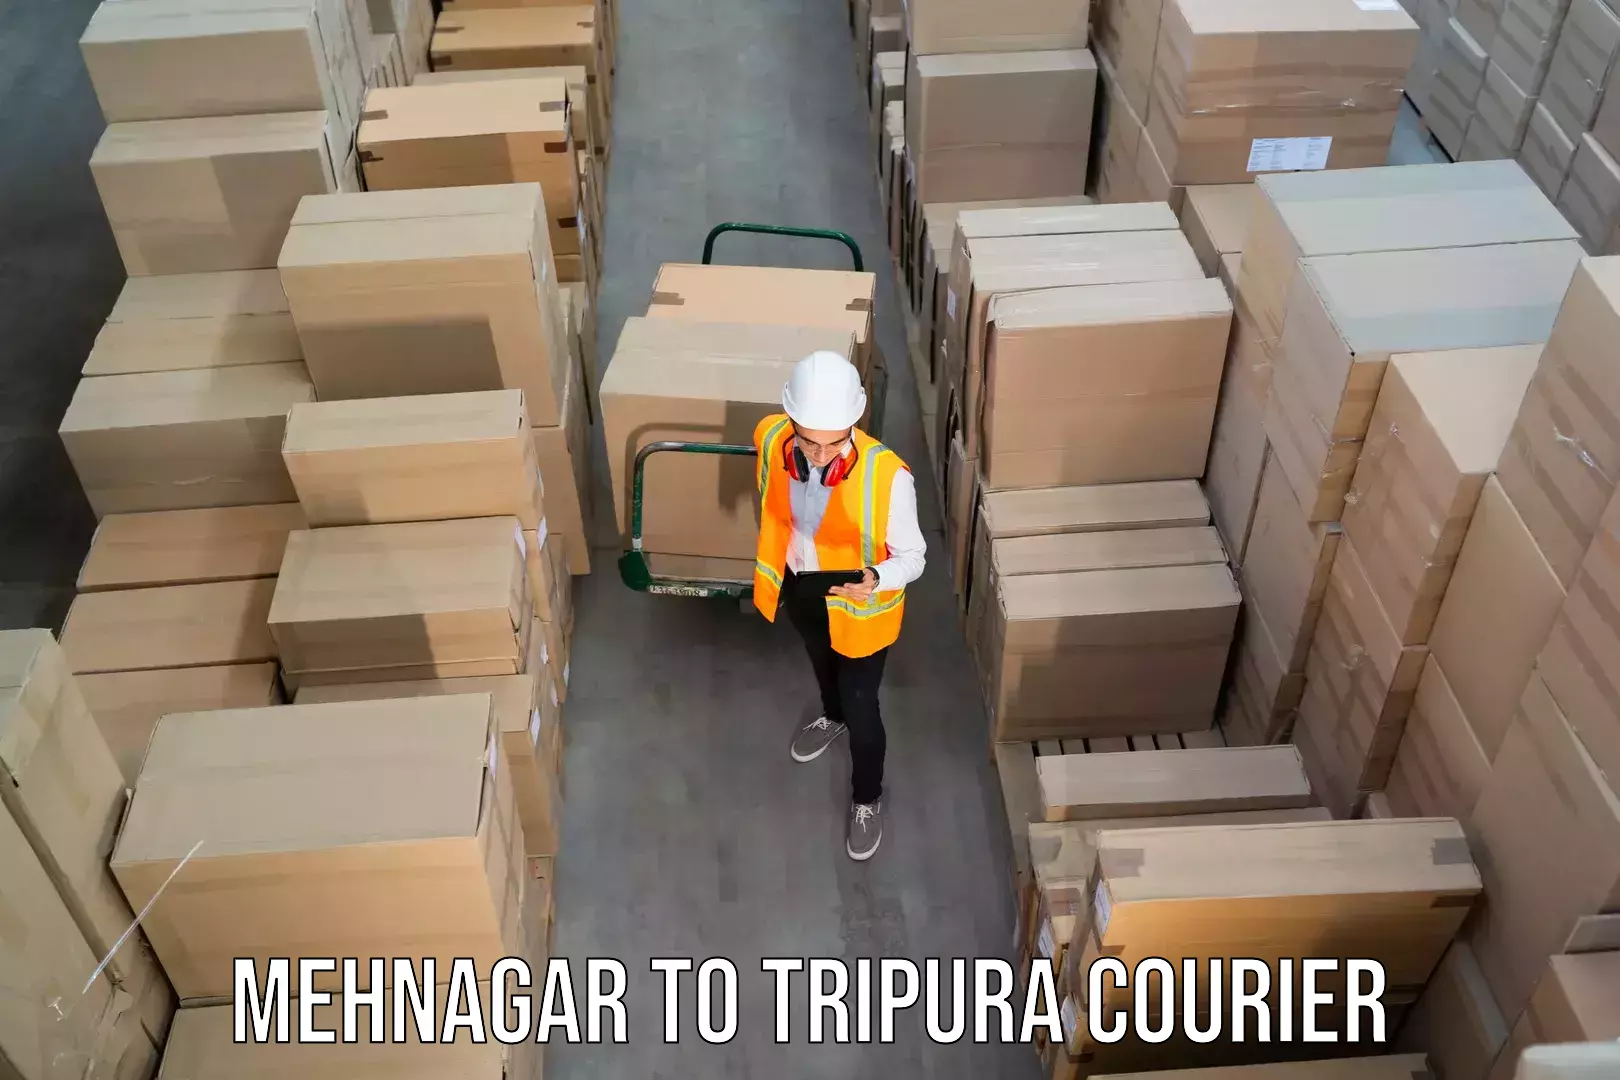 24/7 courier service Mehnagar to Kailashahar